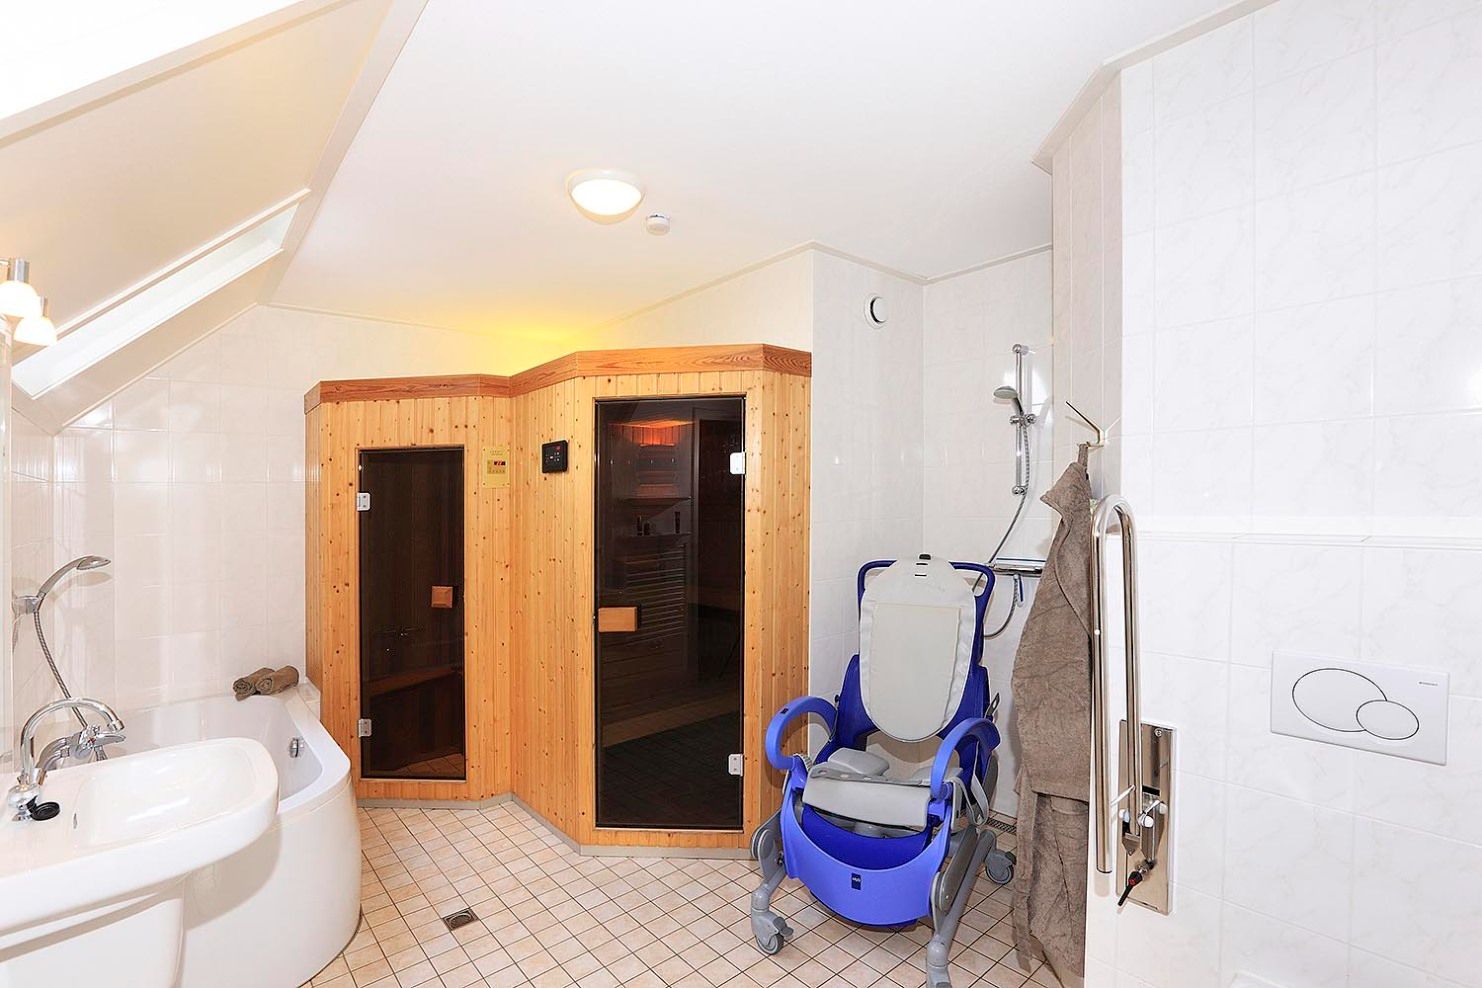 Badkamer met sauna en elektrische douchestoel